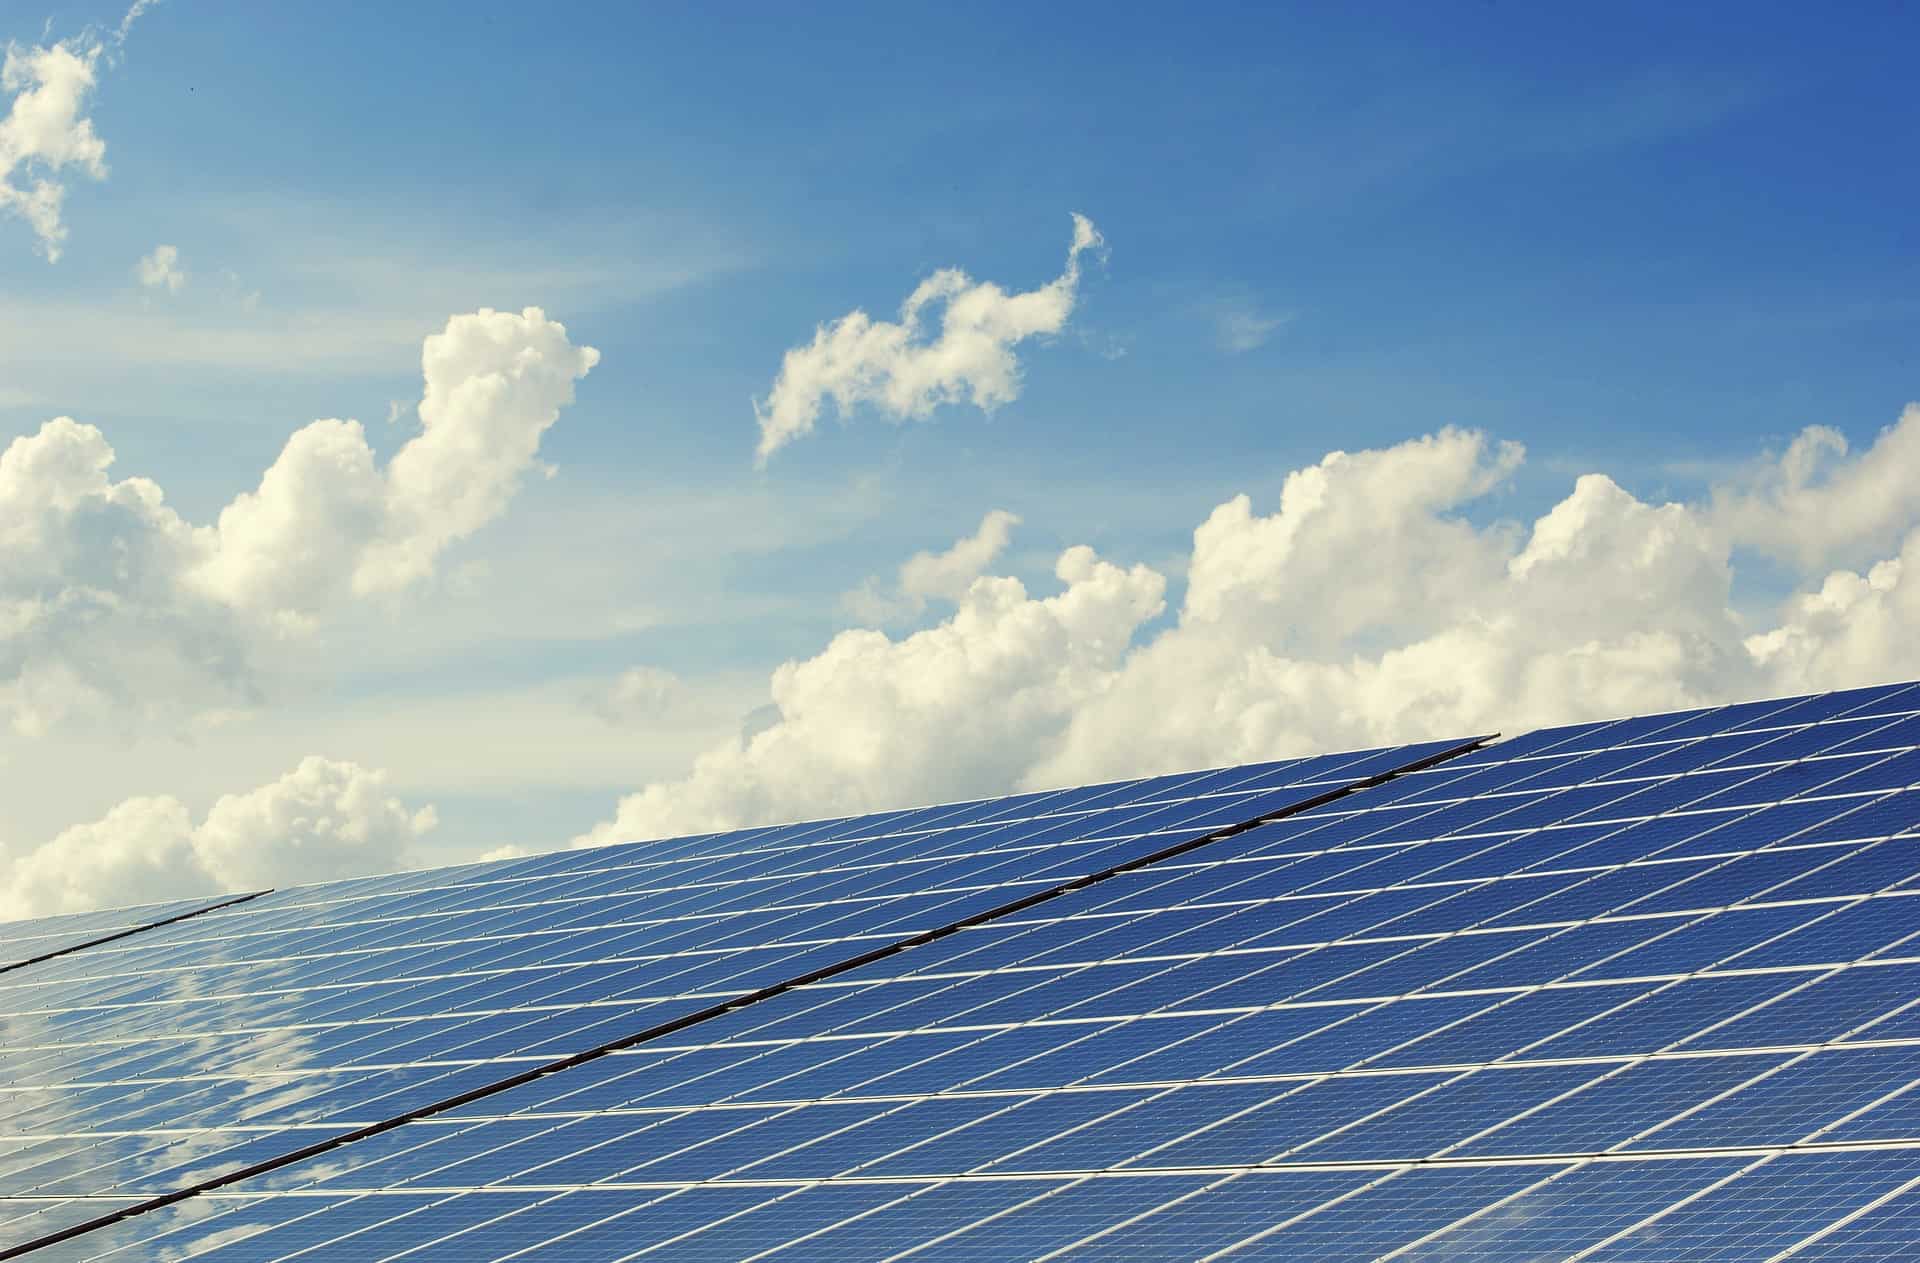 Innowacje w sektorze energetycznym: Przemysł fotowoltaiczny i energetyka odnawialna – Kształtowanie przyszłości zrównoważonej energii